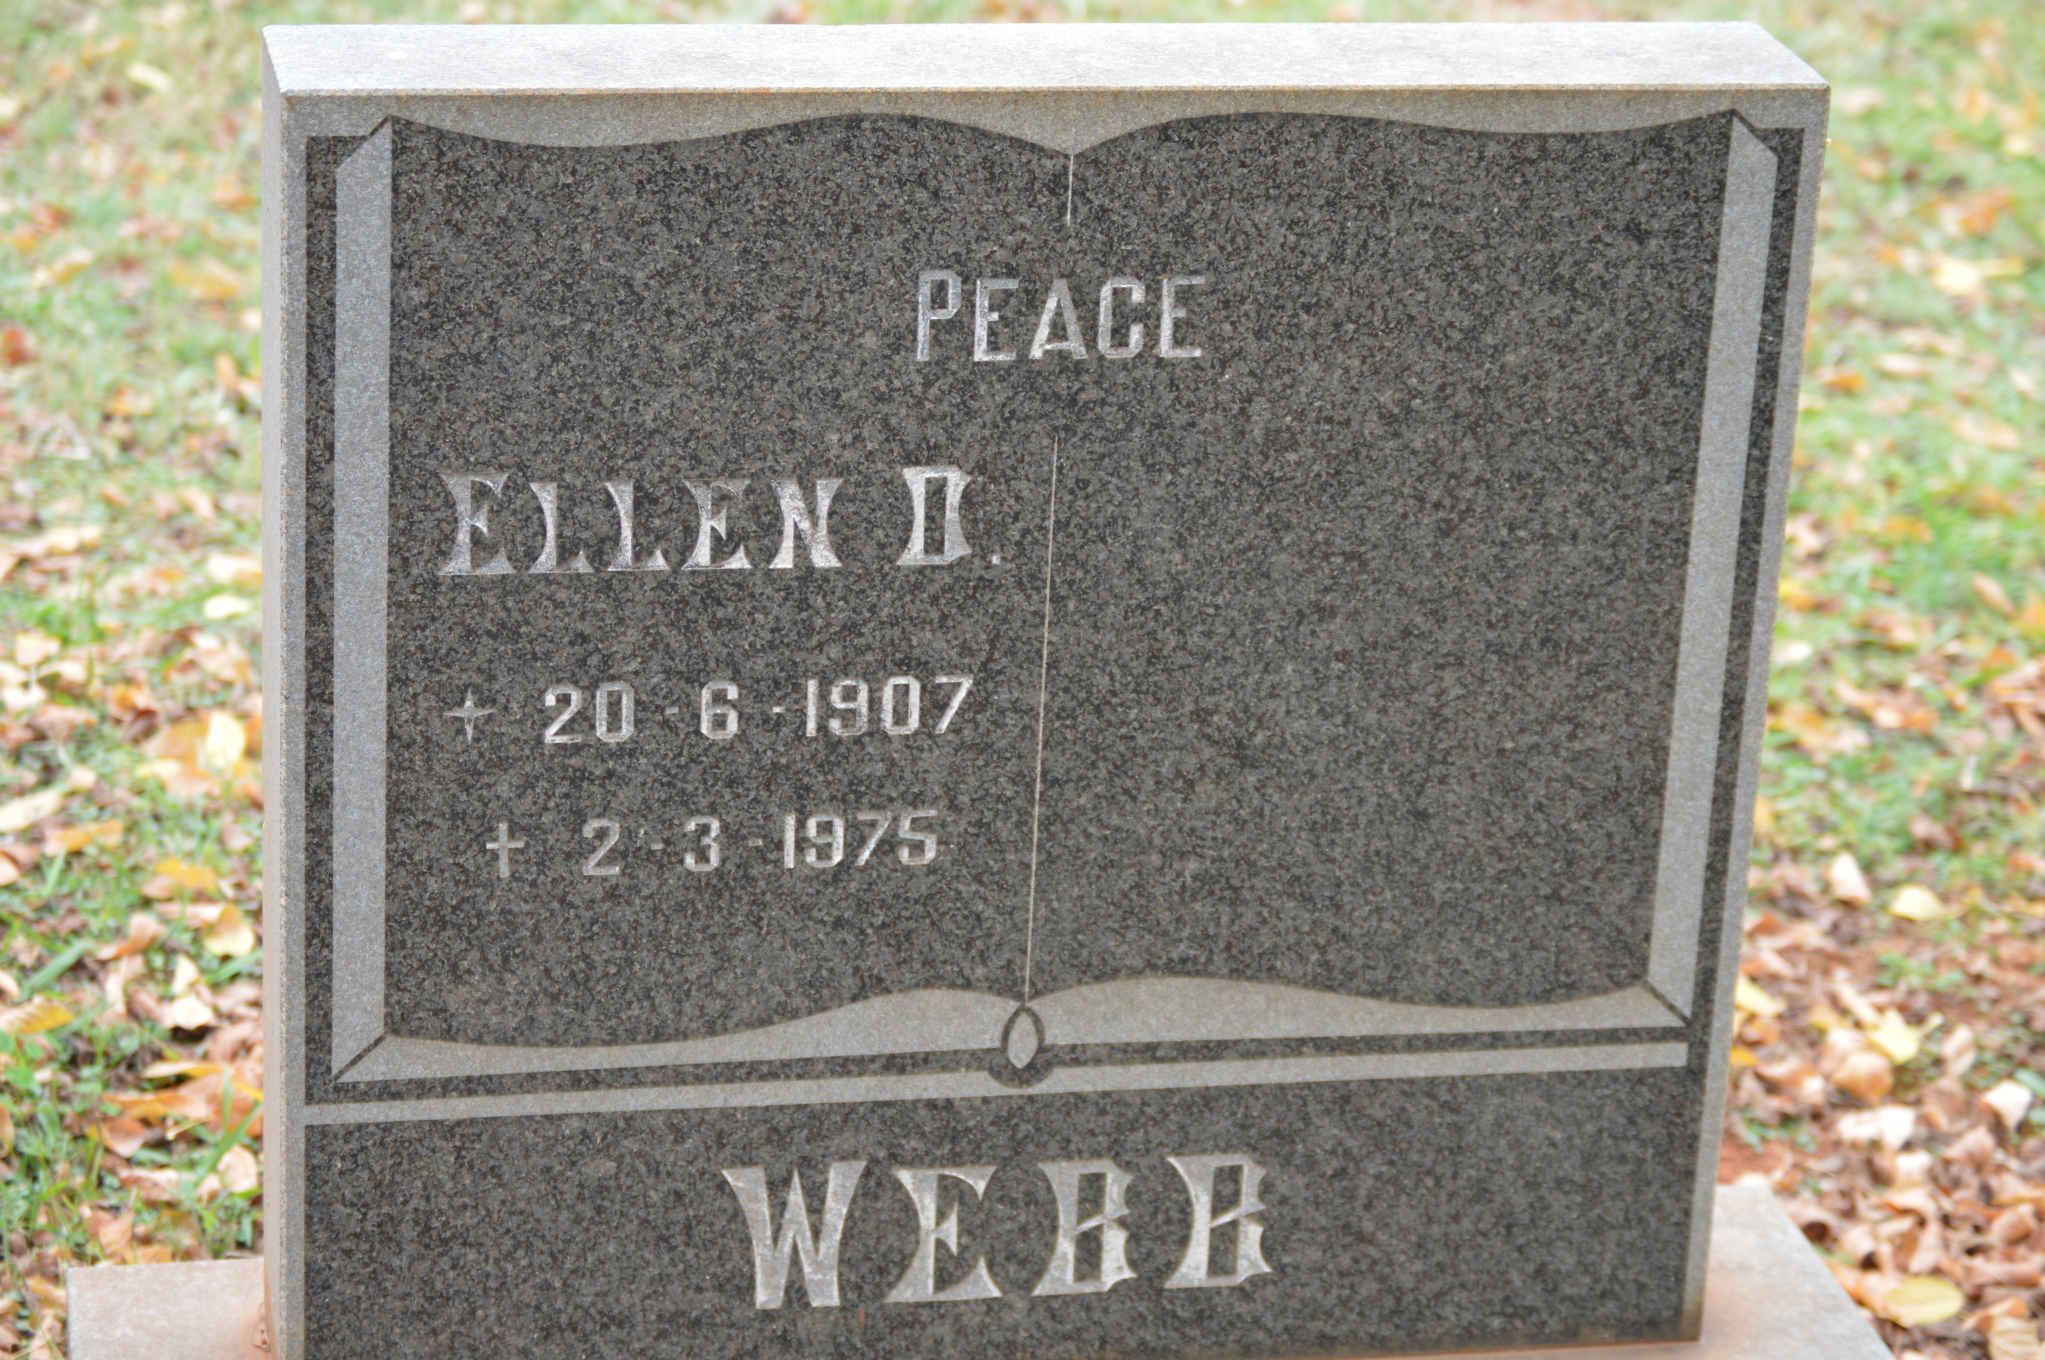 WEBB Ellen D. 1907-1975